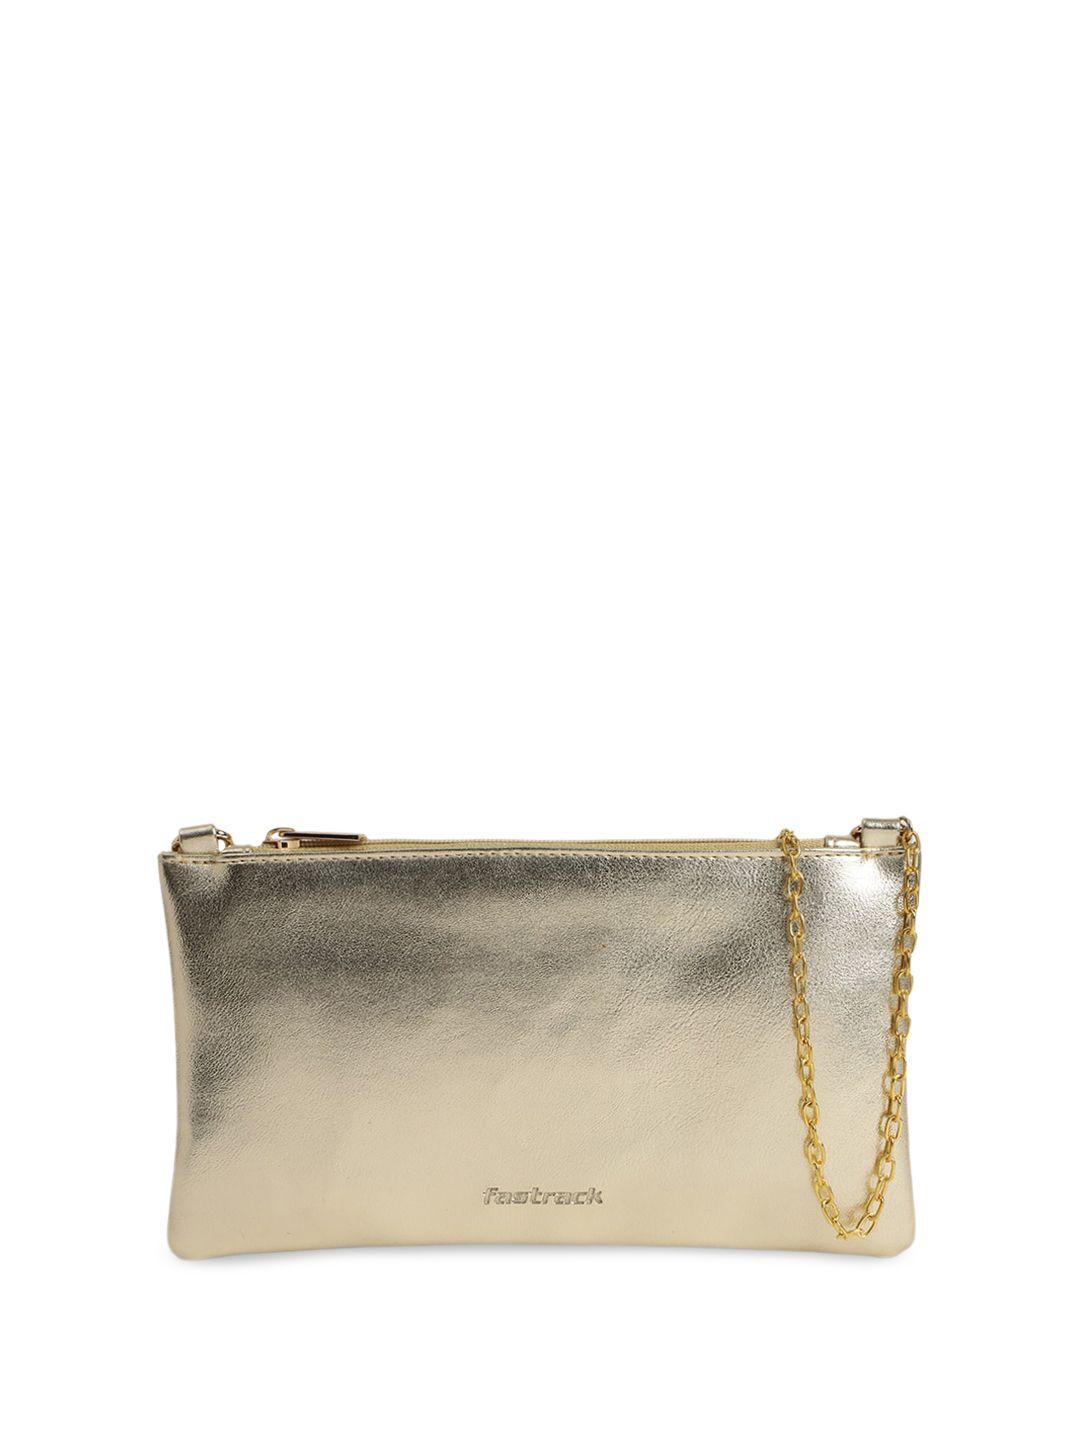 fastrack gold-toned structured sling bag